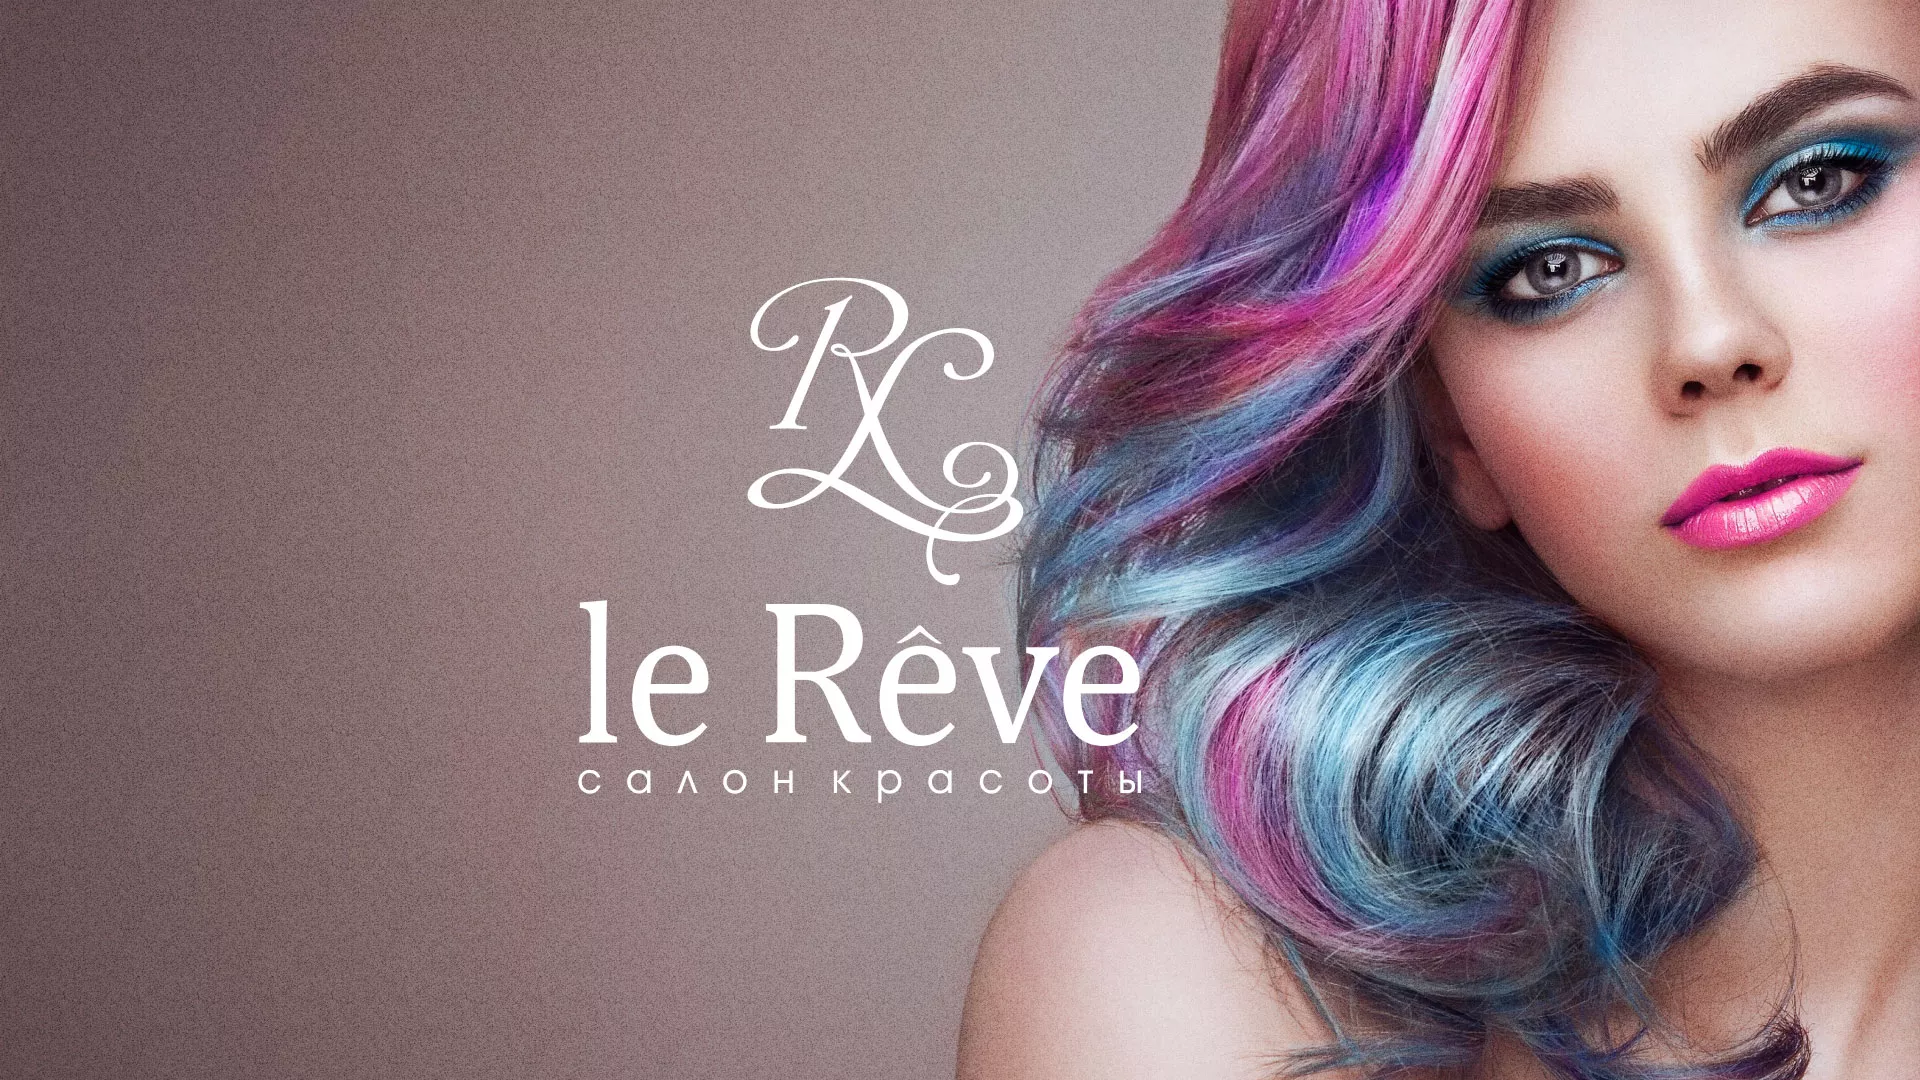 Создание сайта для салона красоты «Le Reve» в Калачинске